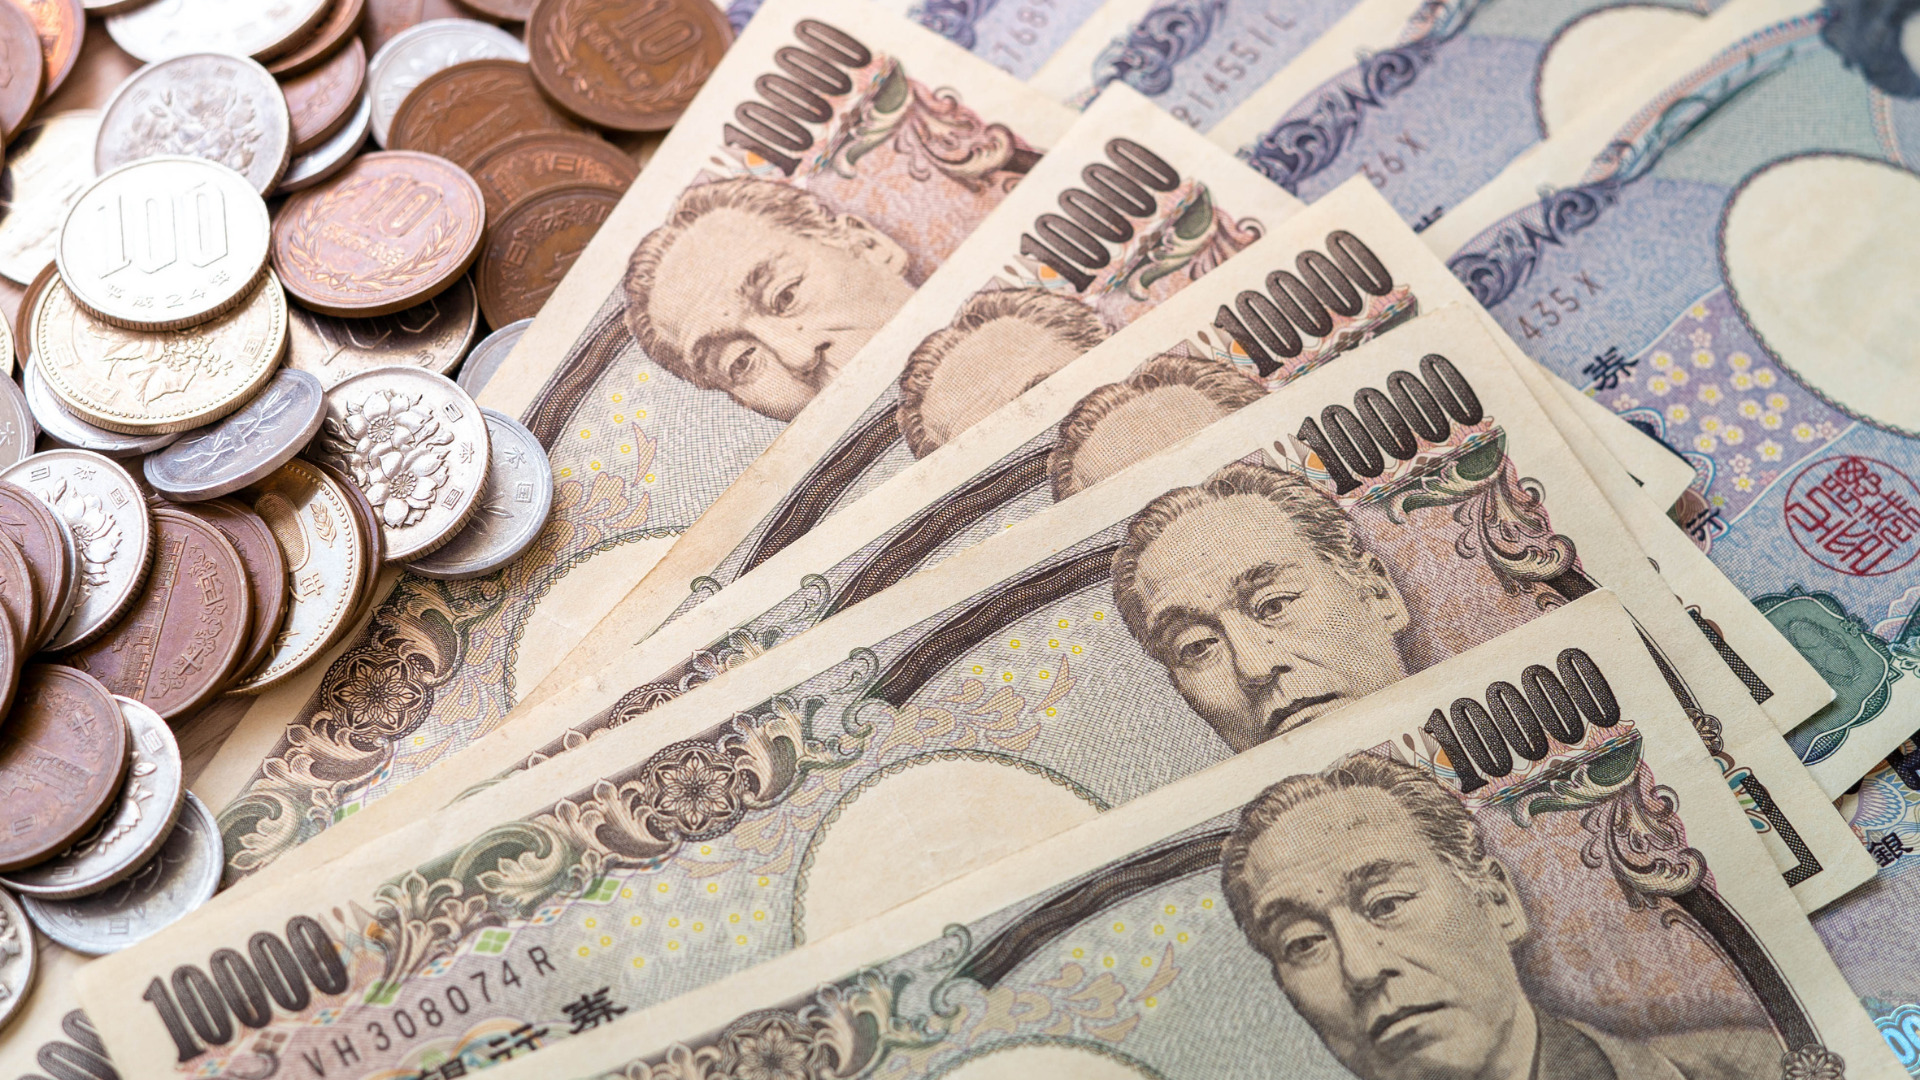 Biaya Hidup di Jepang